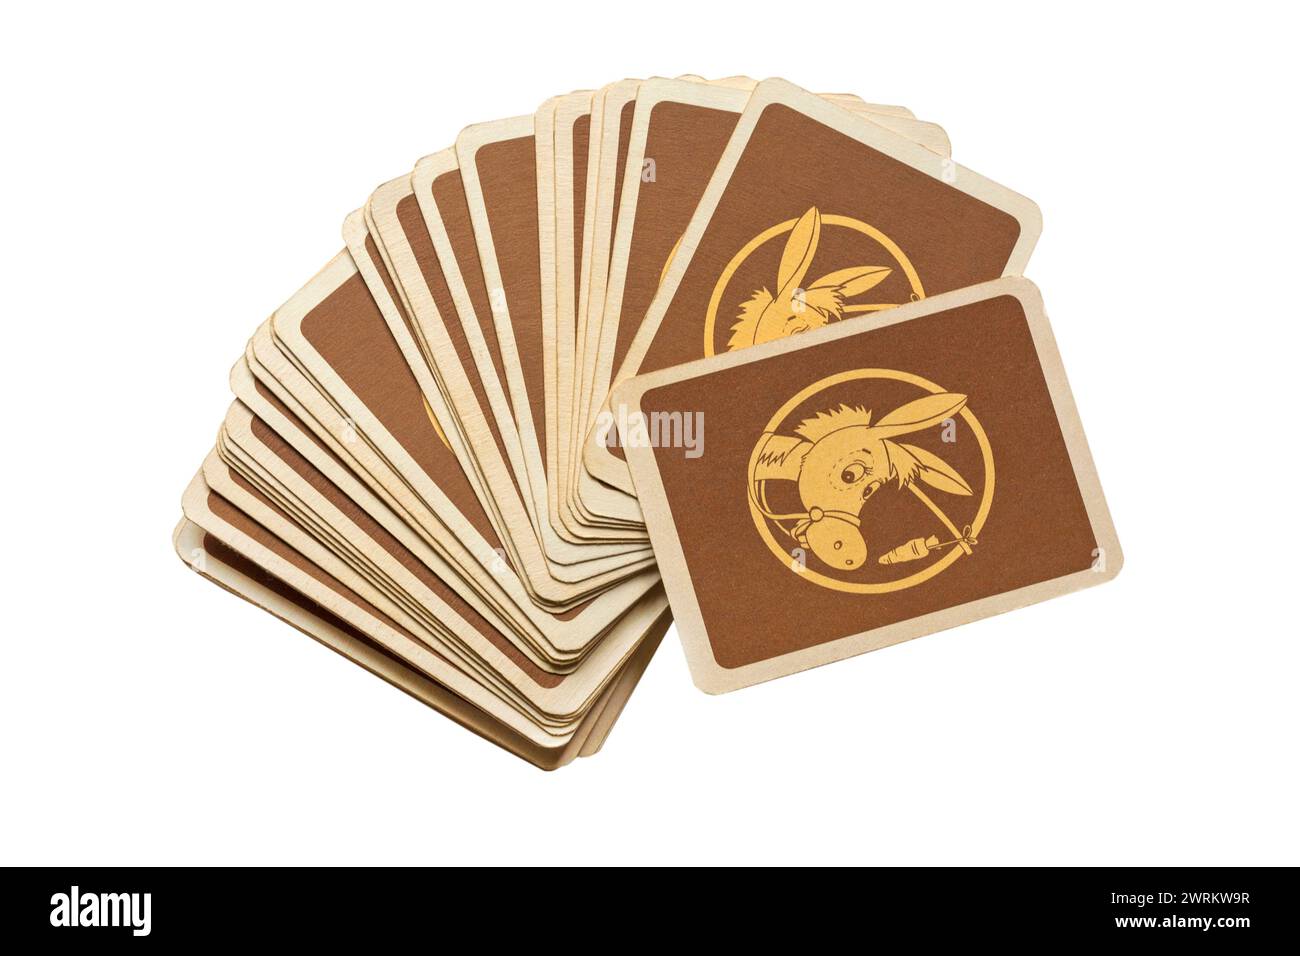 Packung mit alten Retro-Esel-Spielkarten, die die Rückseite isoliert auf weißem Hintergrund zeigen - UK Stockfoto